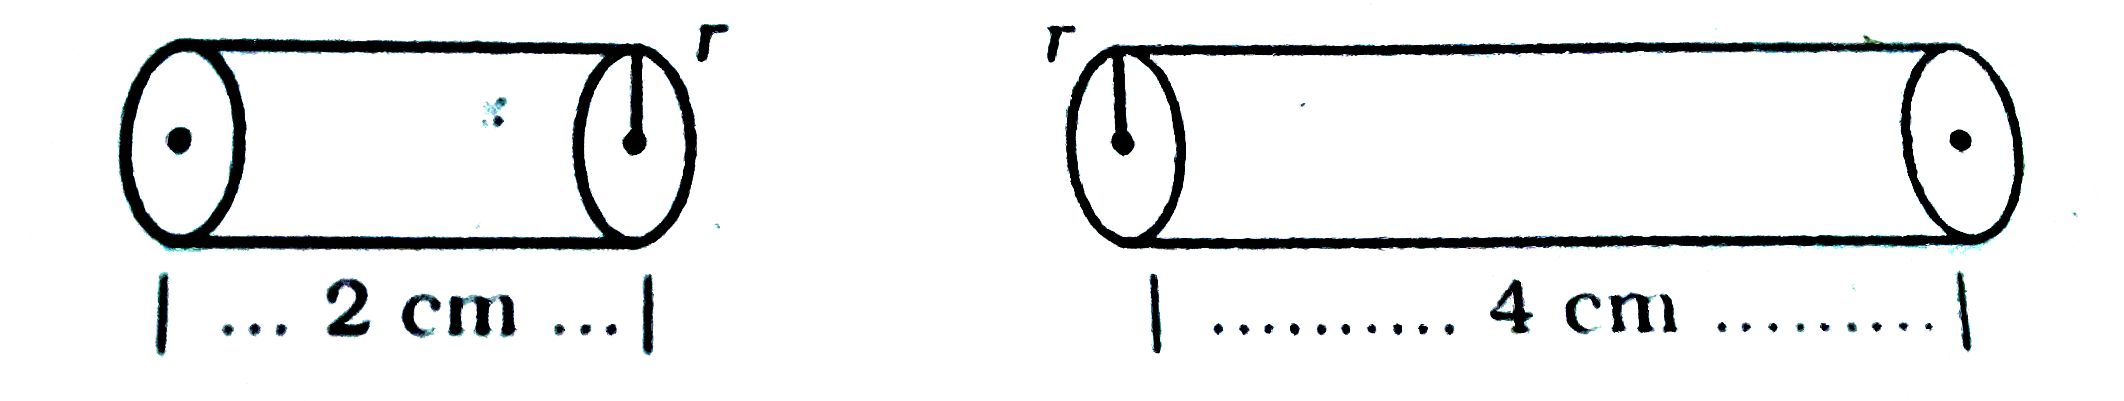 चित्र में  एक ही धातु के दो चालकों की प्रतिरोधकता क्रमशः  rho(1)Omega-m एवं   rho(2)Omega-m है।   rho(1)  व  rho(2)   के अनुपात का मान लिखिए।